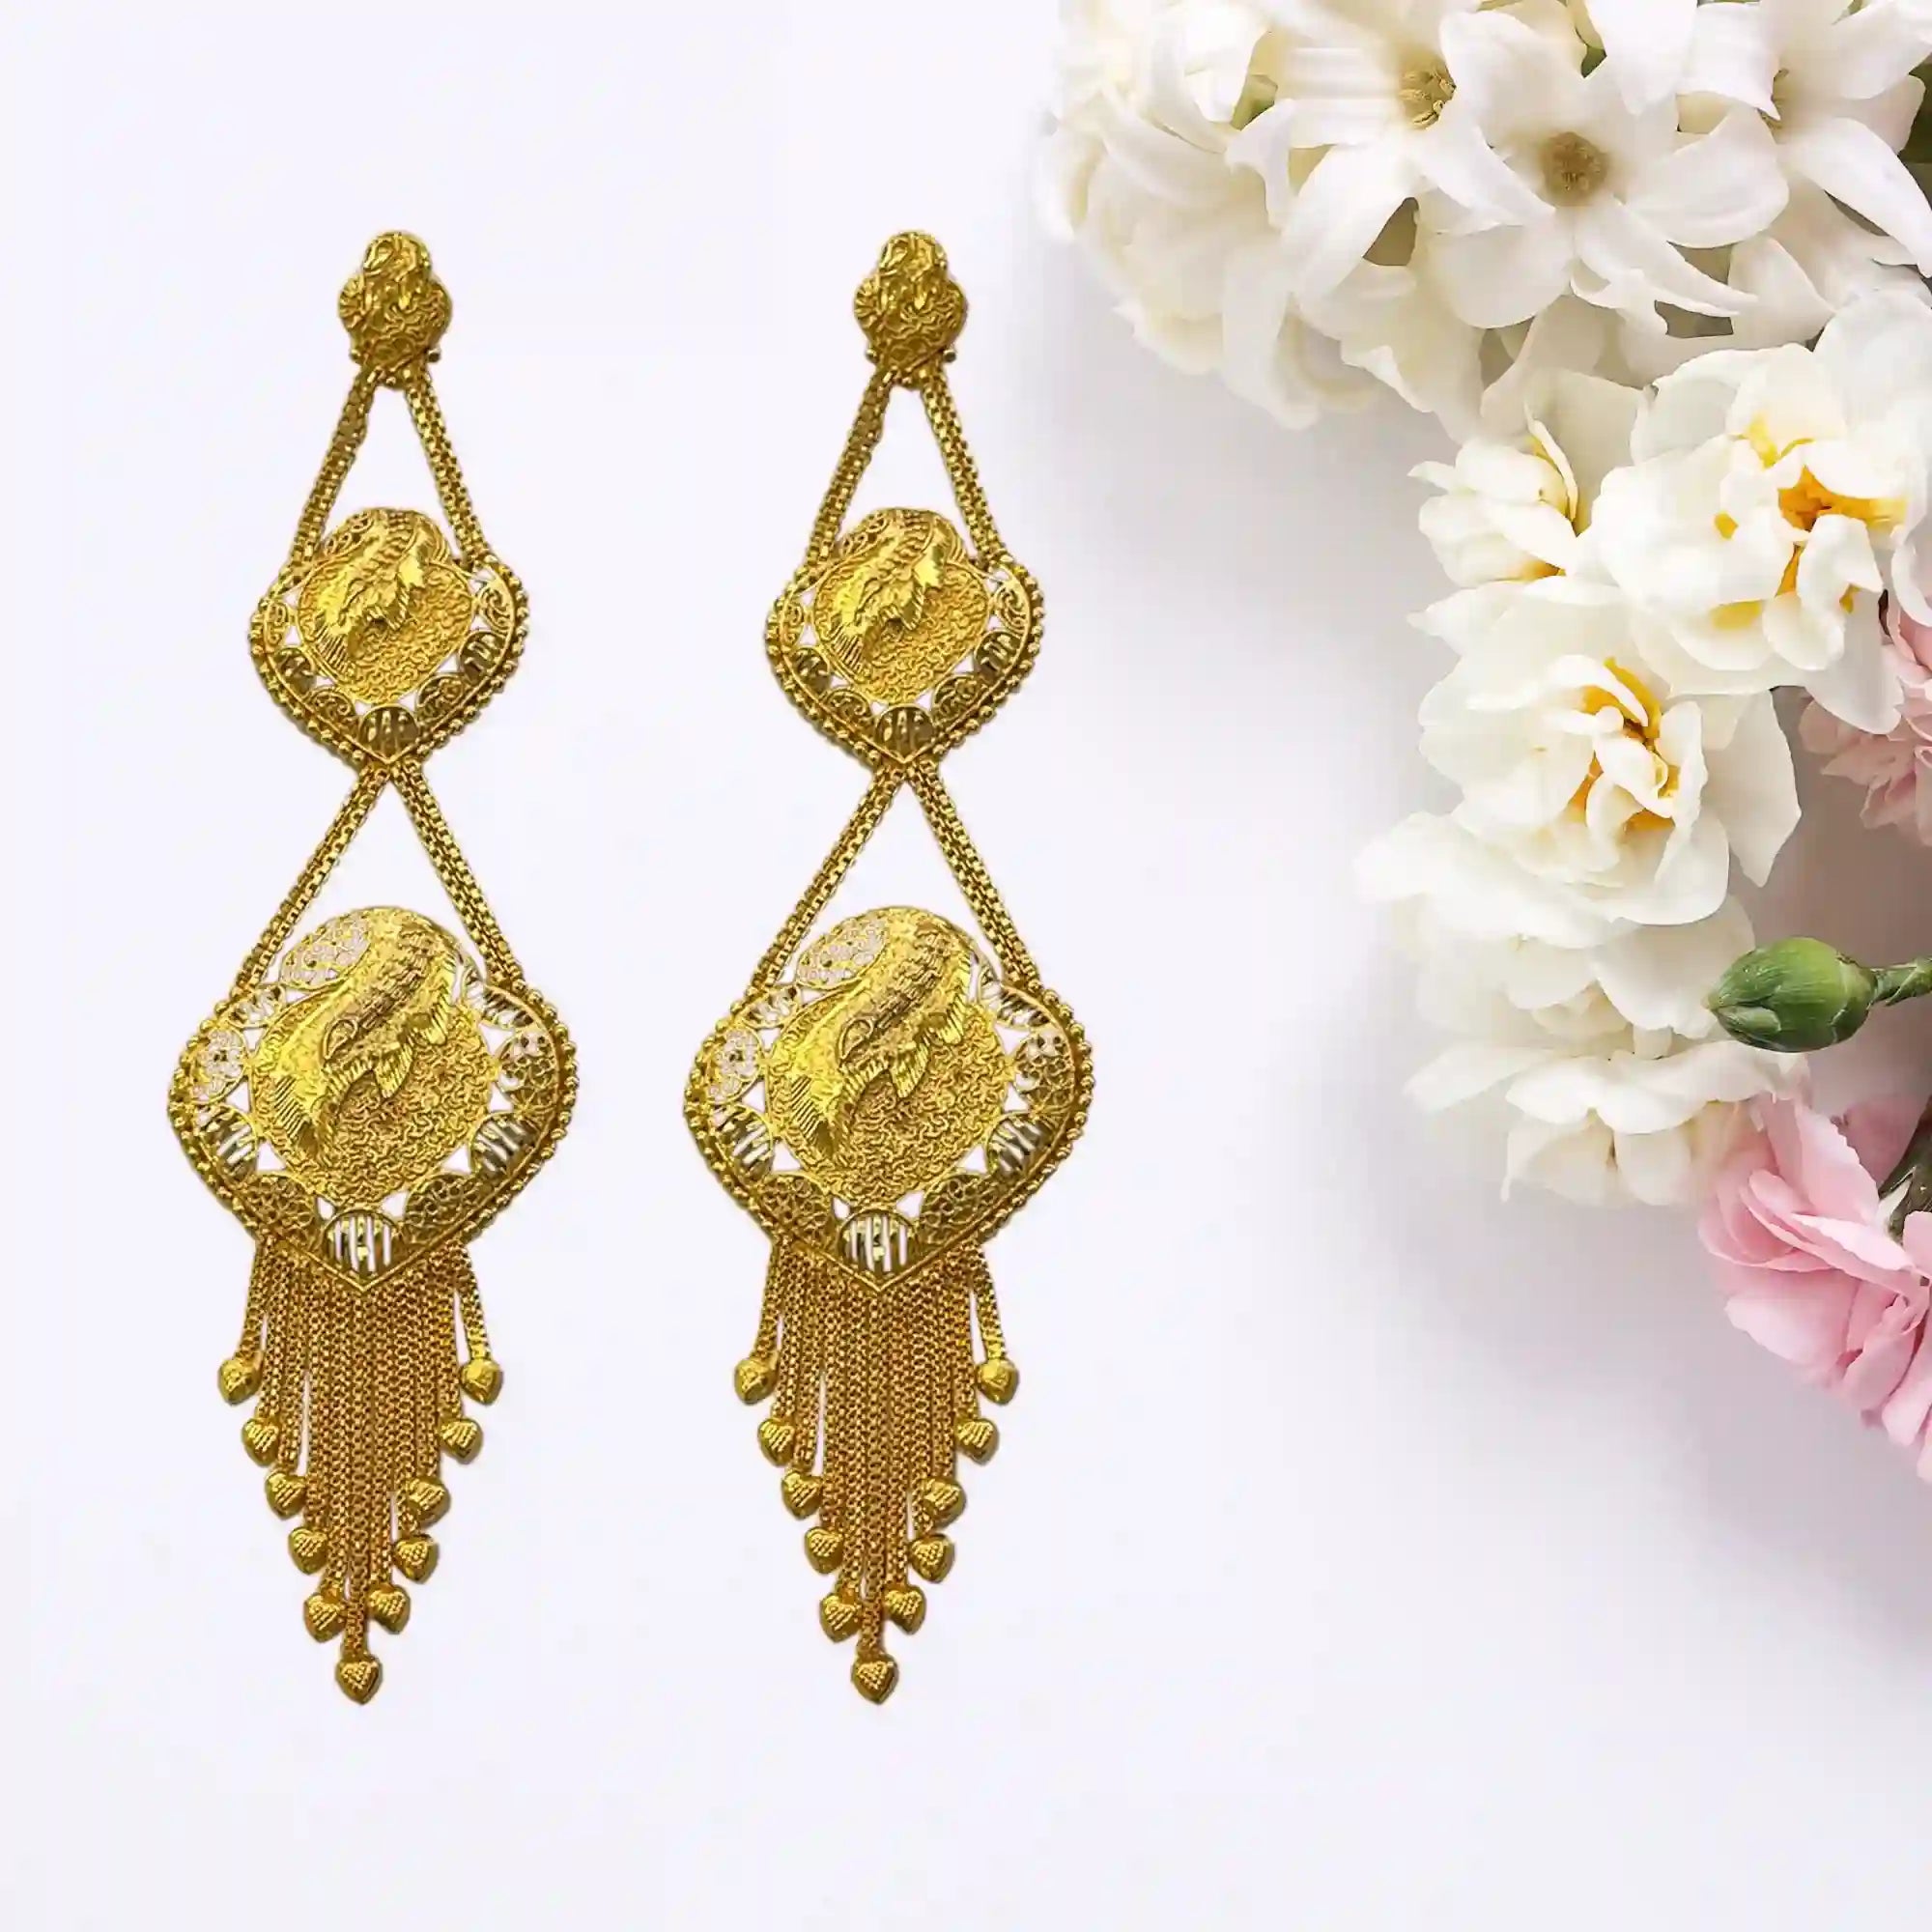 Gold-Plated Earrings, Statement Earrings, Wedding Earrings, Indian Jewelry Mall, Long Earrings